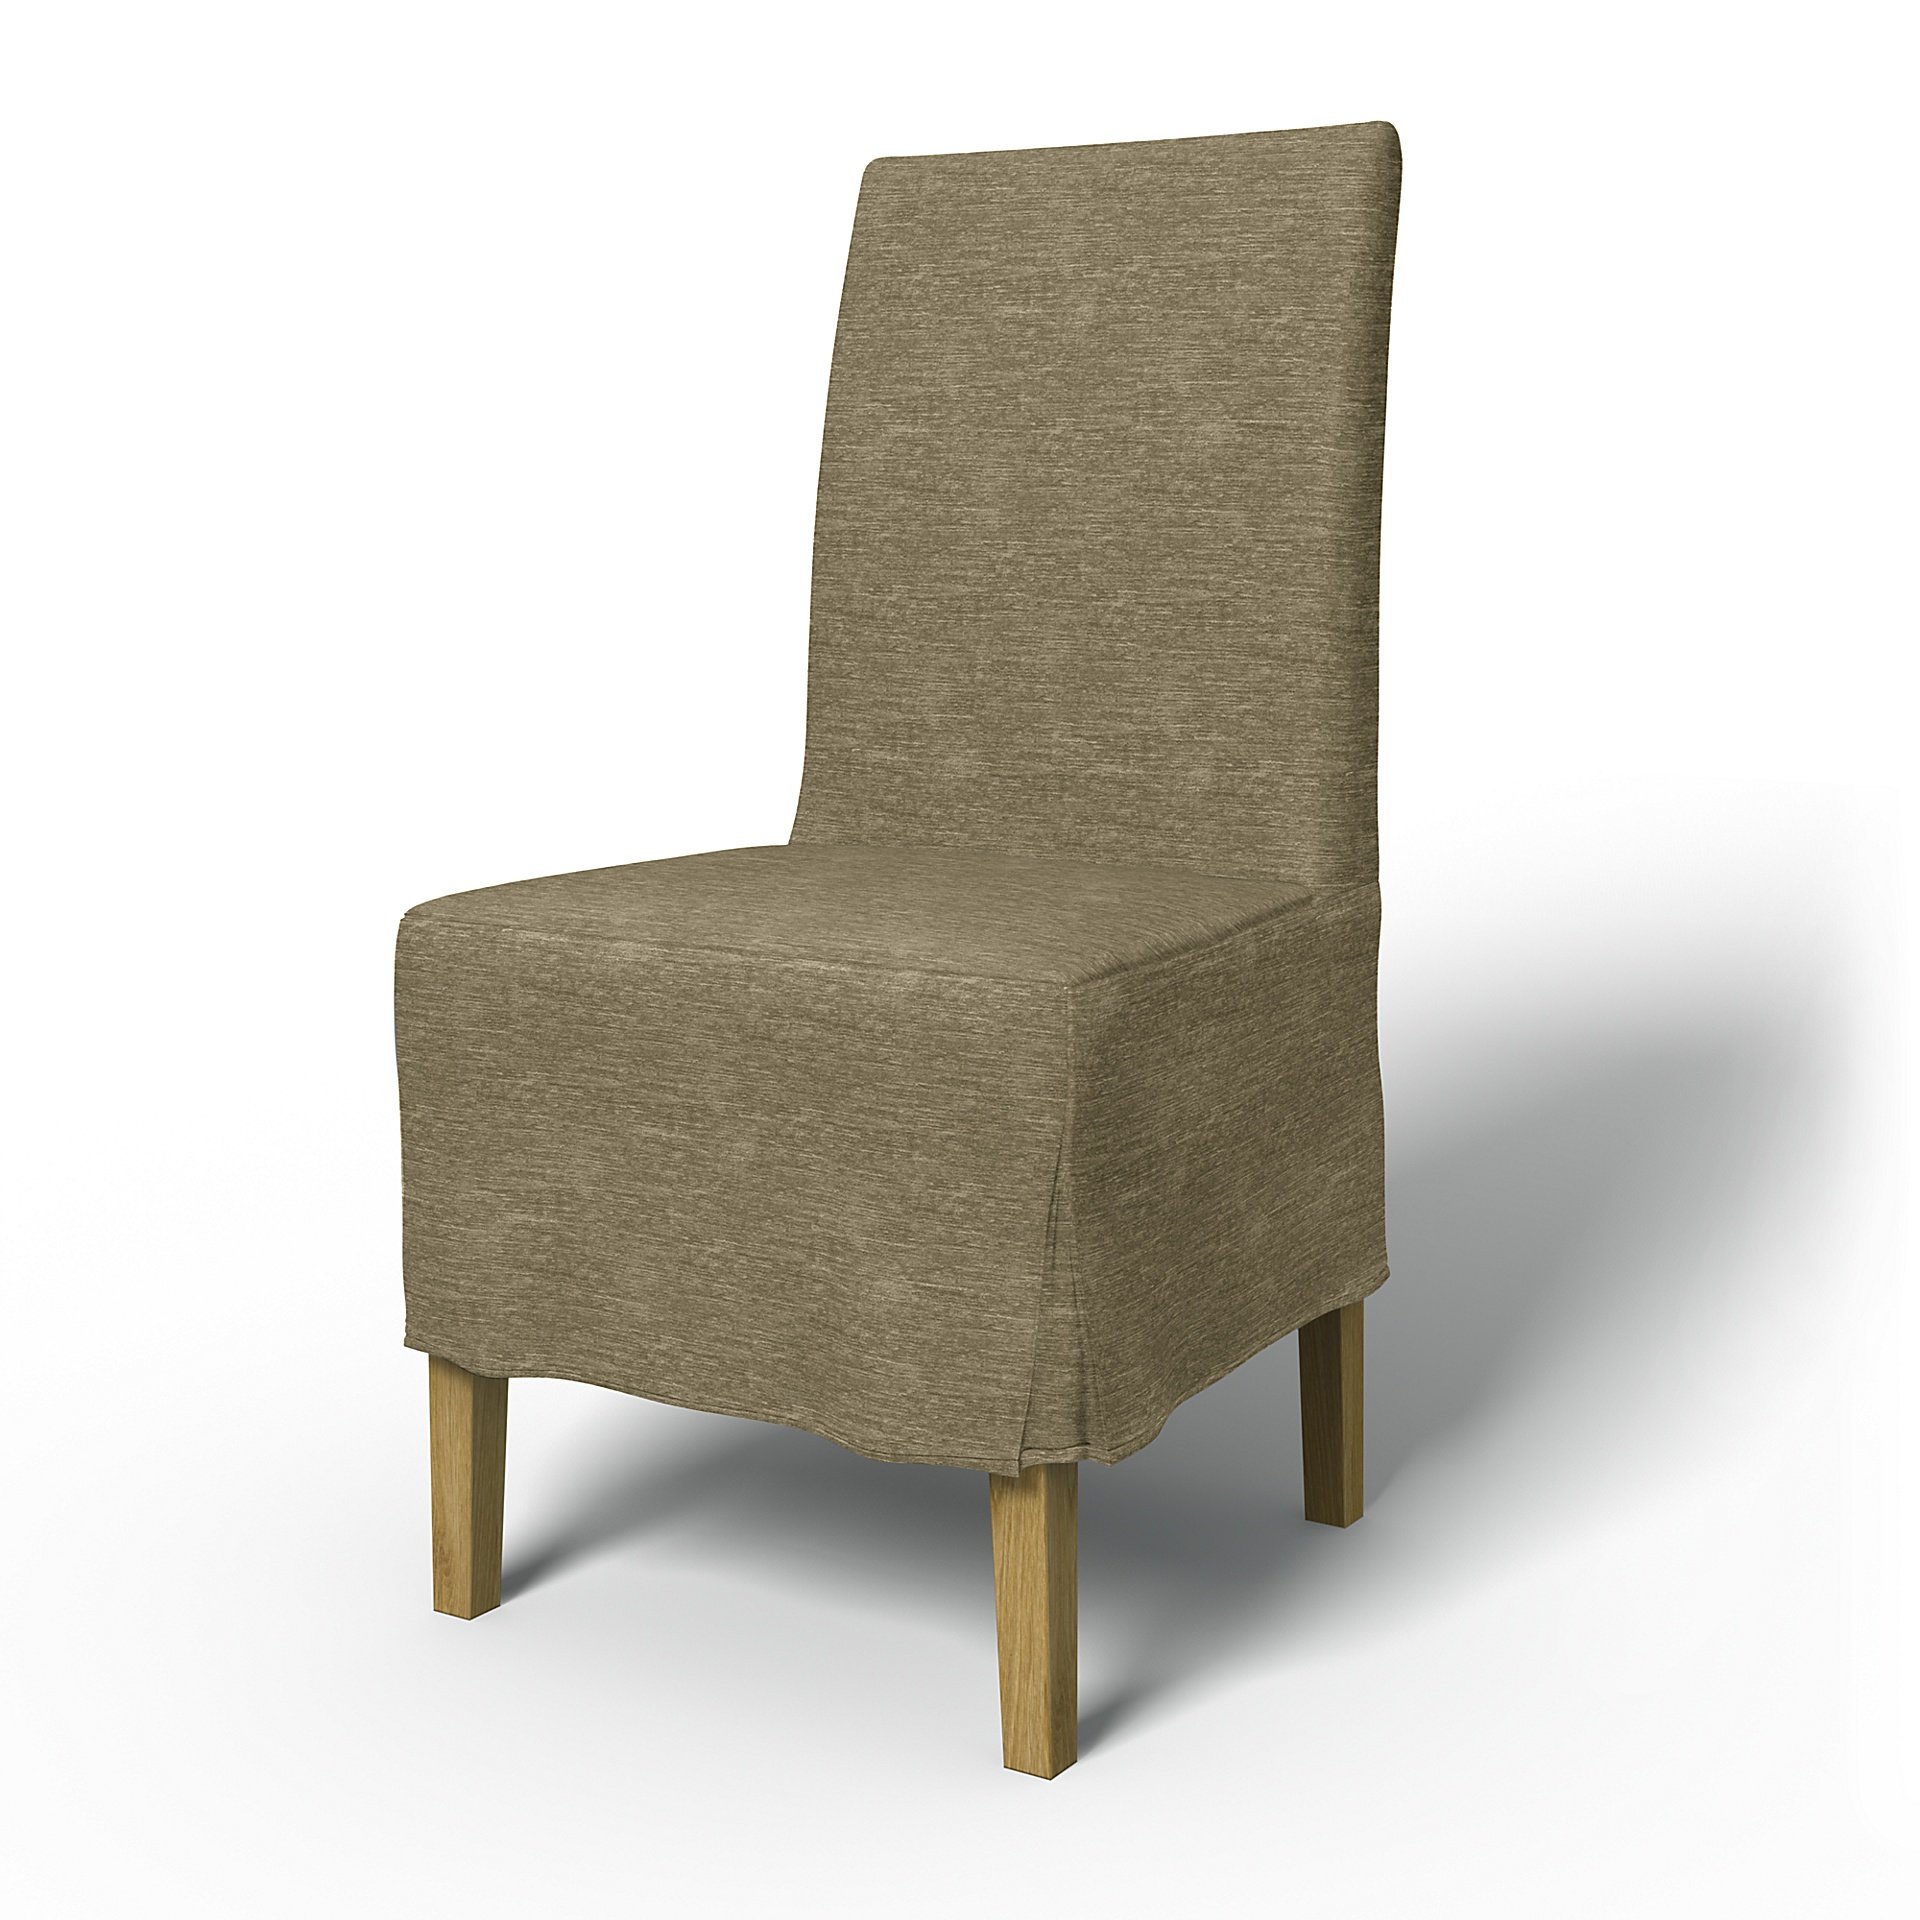 IKEA - Henriksdal Dining Chair Cover Medium skirt with Box Pleat (Standard model), Beige, Velvet - B